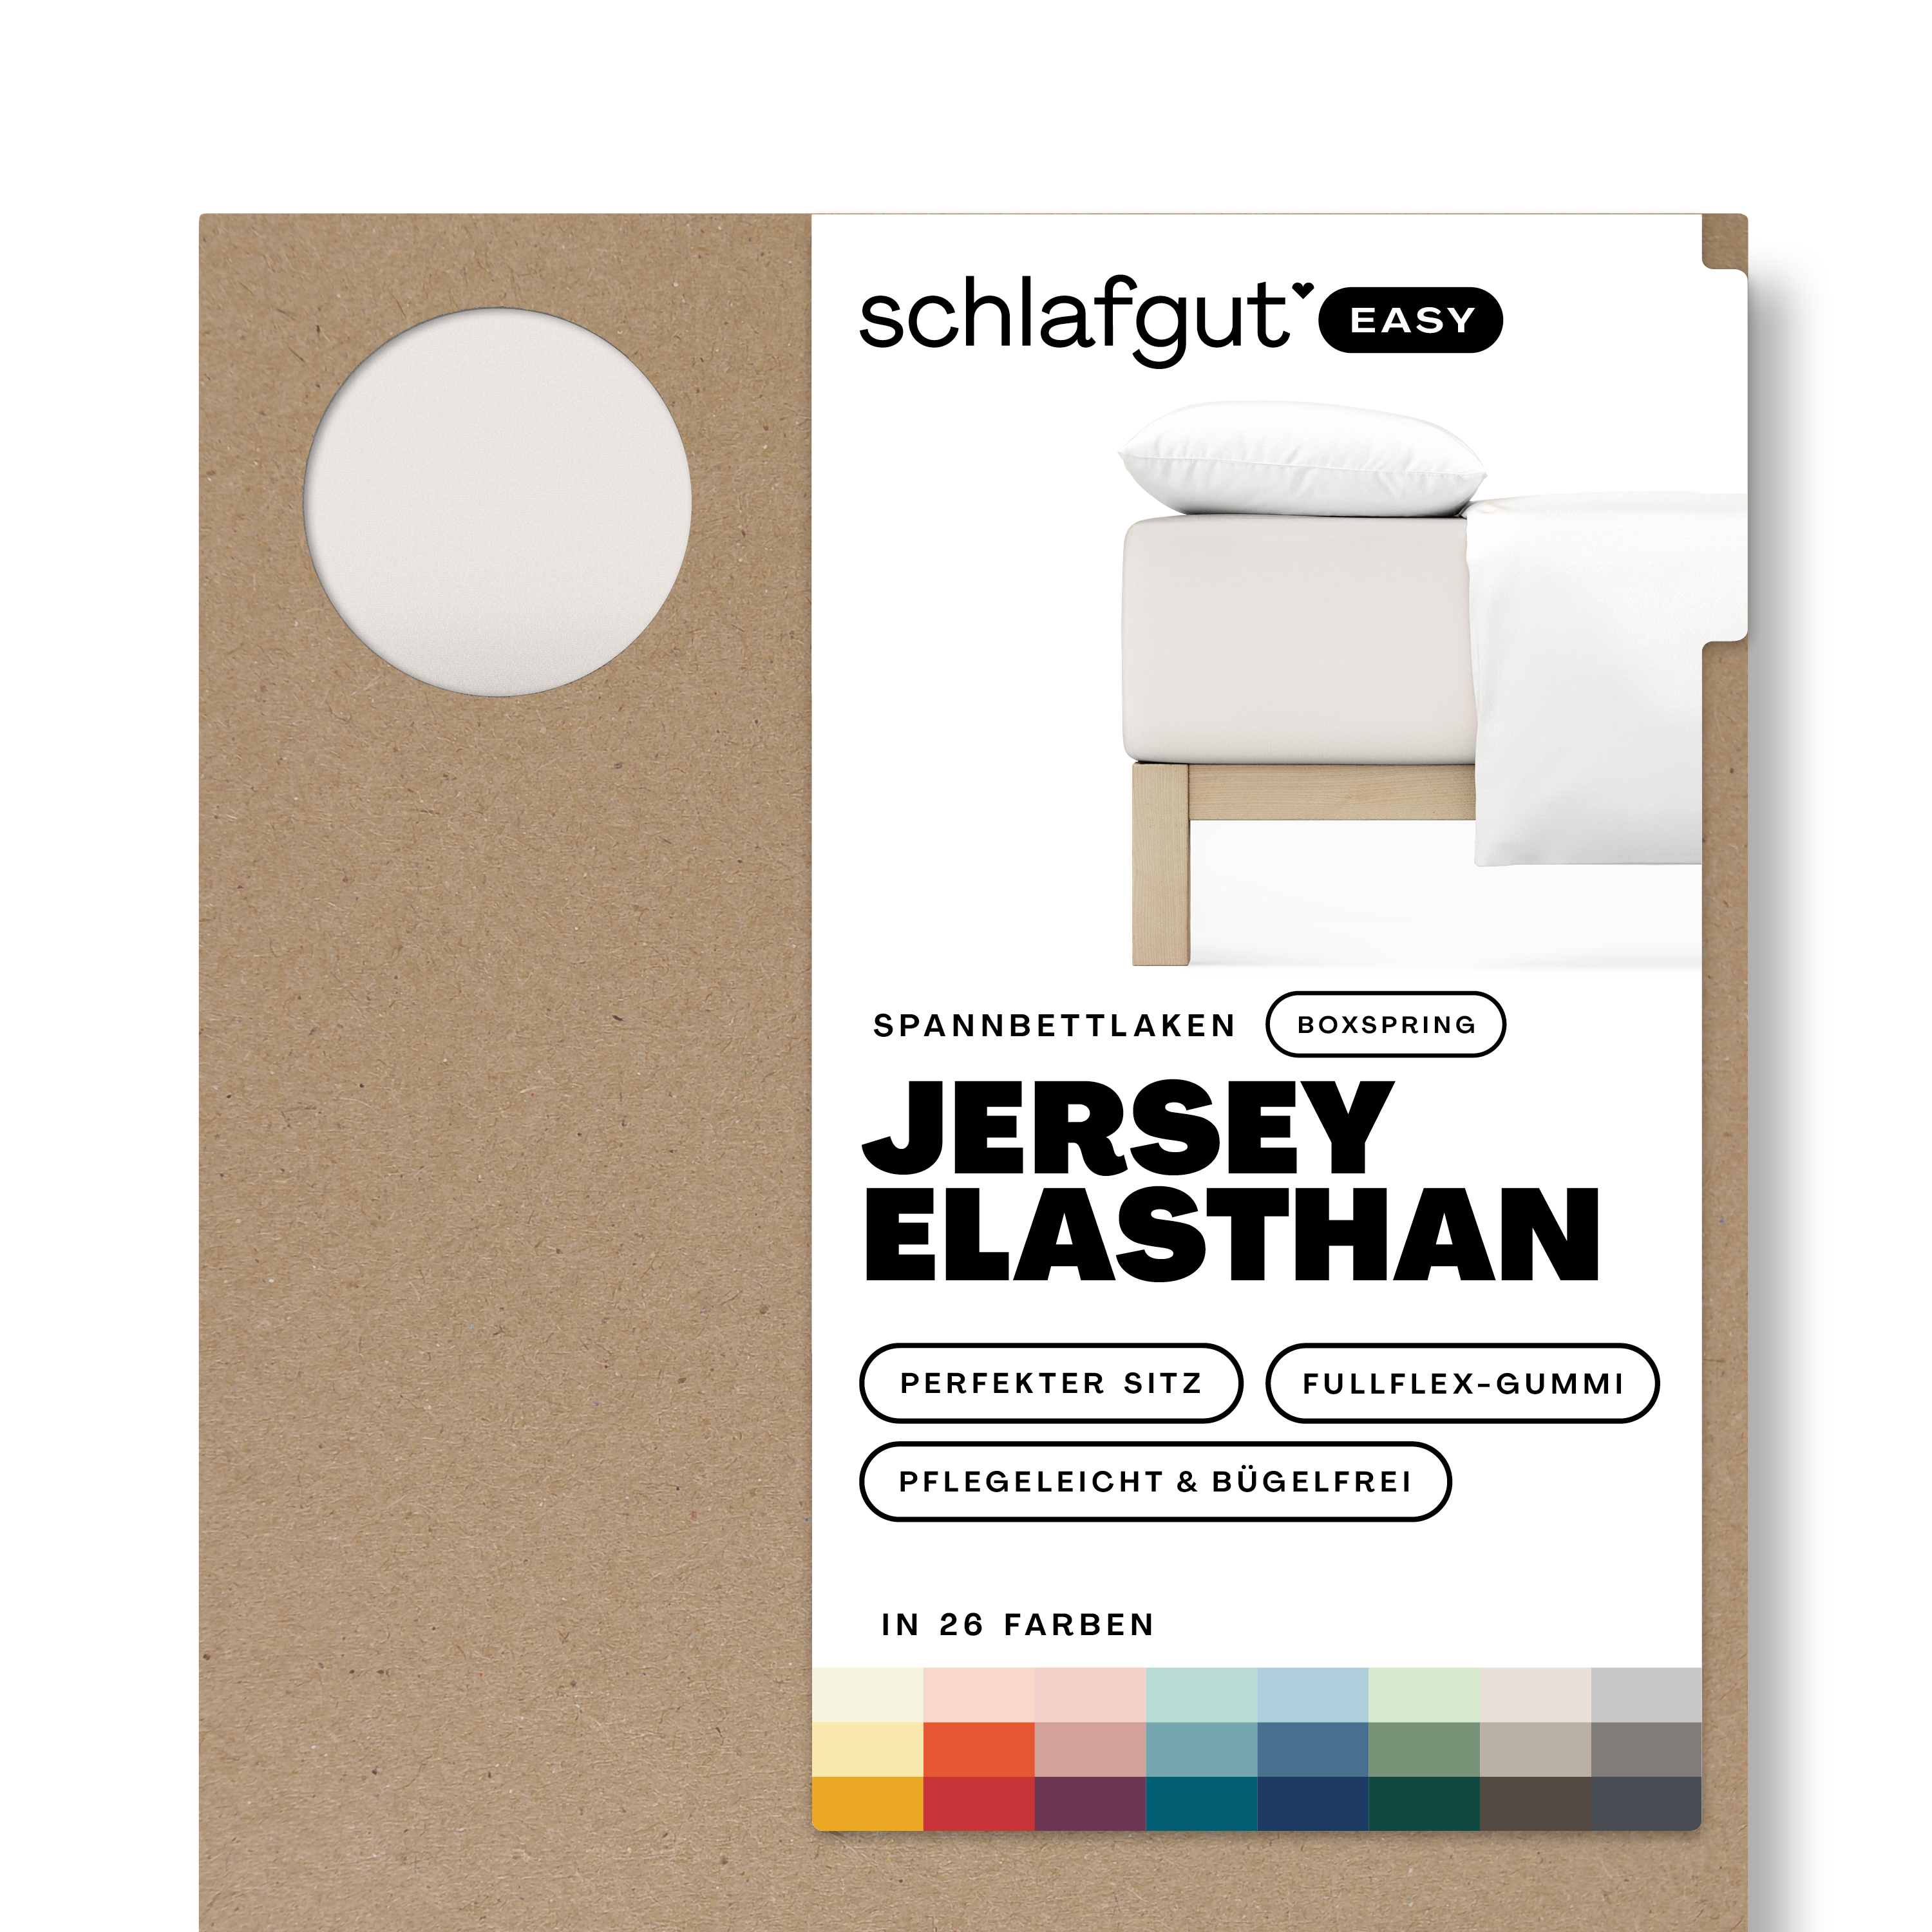 Das Produktbild vom Spannbettlaken der Reihe Easy Elasthan Boxspring in Farbe sand light von Schlafgut